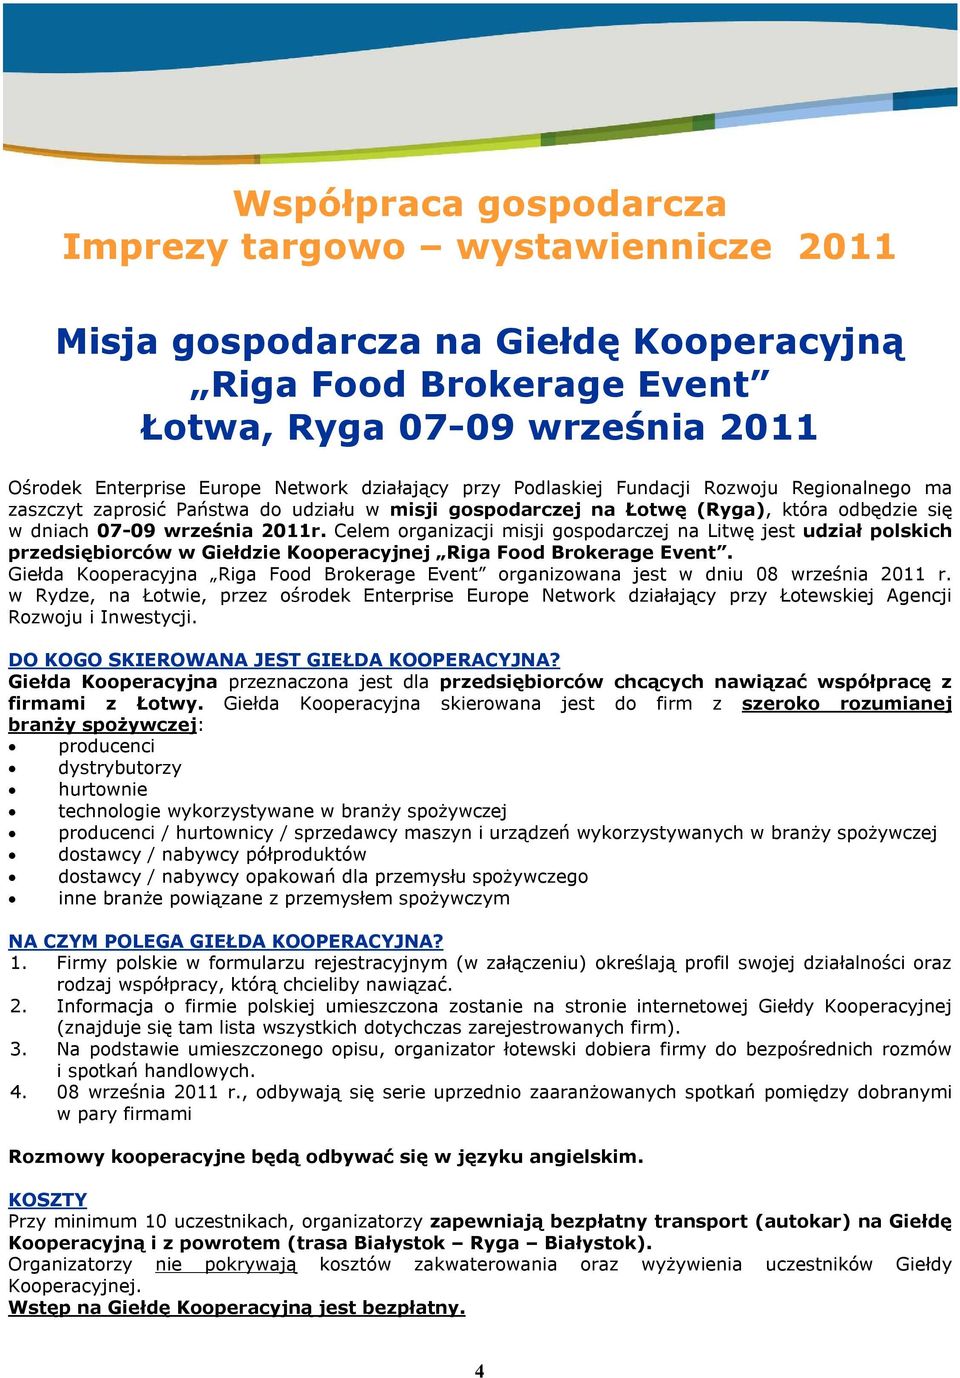 Celem organizacji misji gospodarczej na Litwę jest udział polskich przedsiębiorców w Giełdzie Kooperacyjnej Riga Food Brokerage Event.